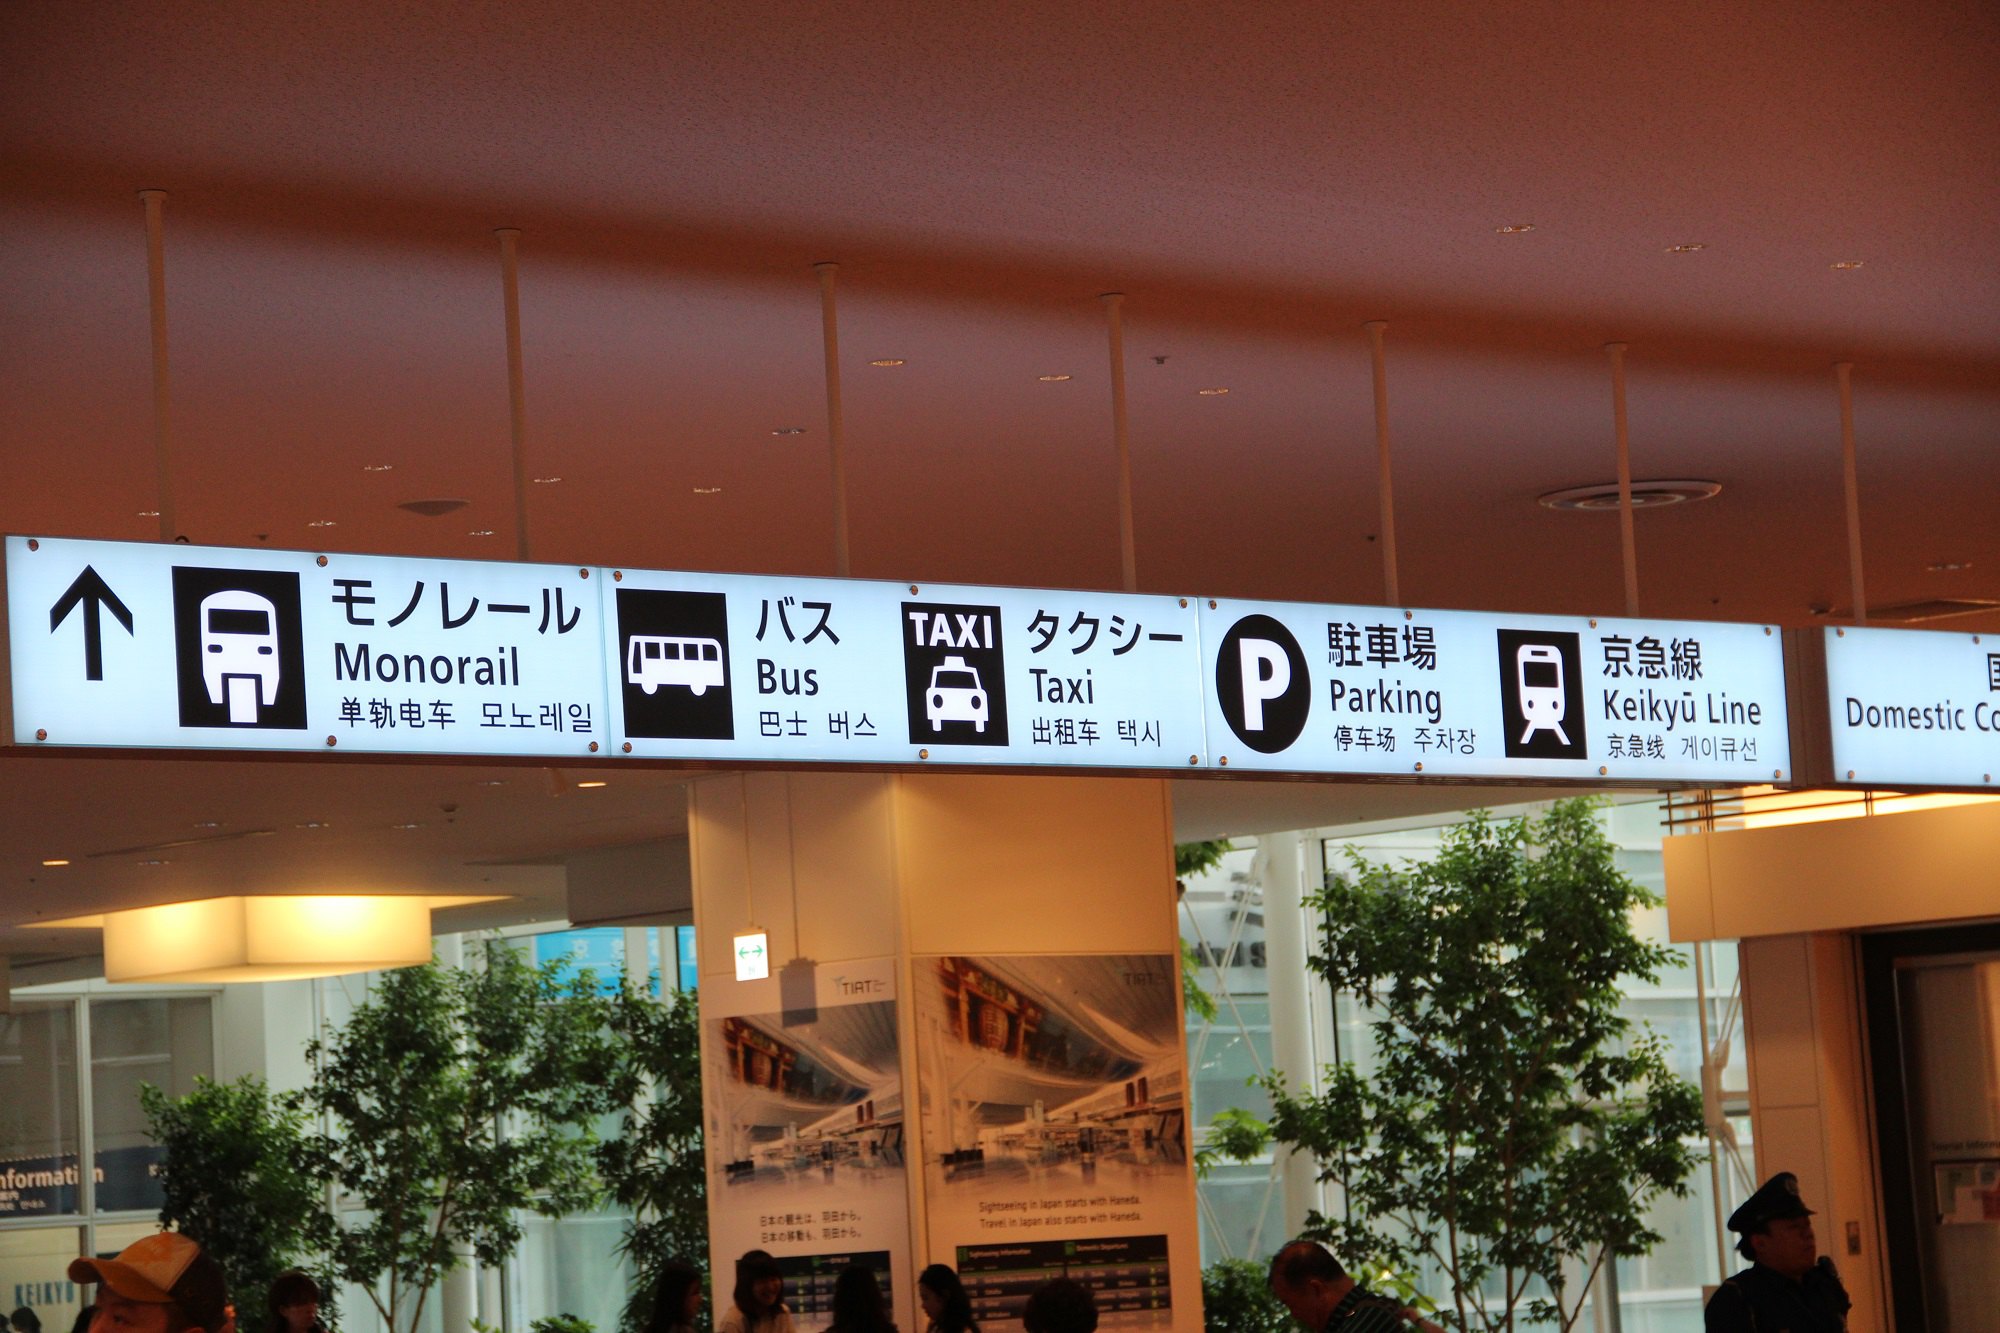 羽田机场就有地铁山手线,京急线等,机场有中文的交通引导,并且在问讯